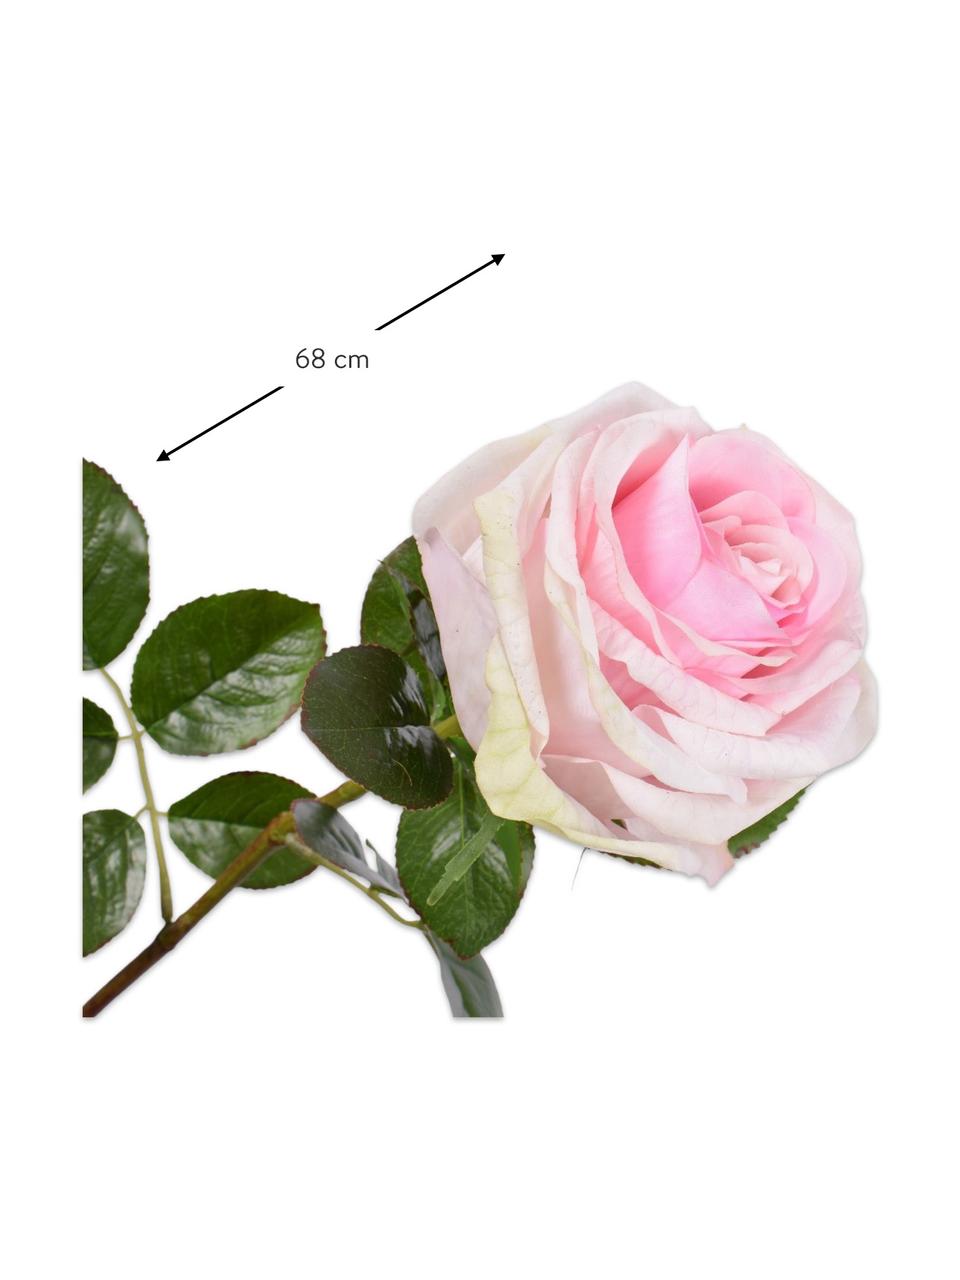 Flores artificiales Rosen, 2 uds., Plástico, alambre de metal, Blanco, rosa, L 68 cm